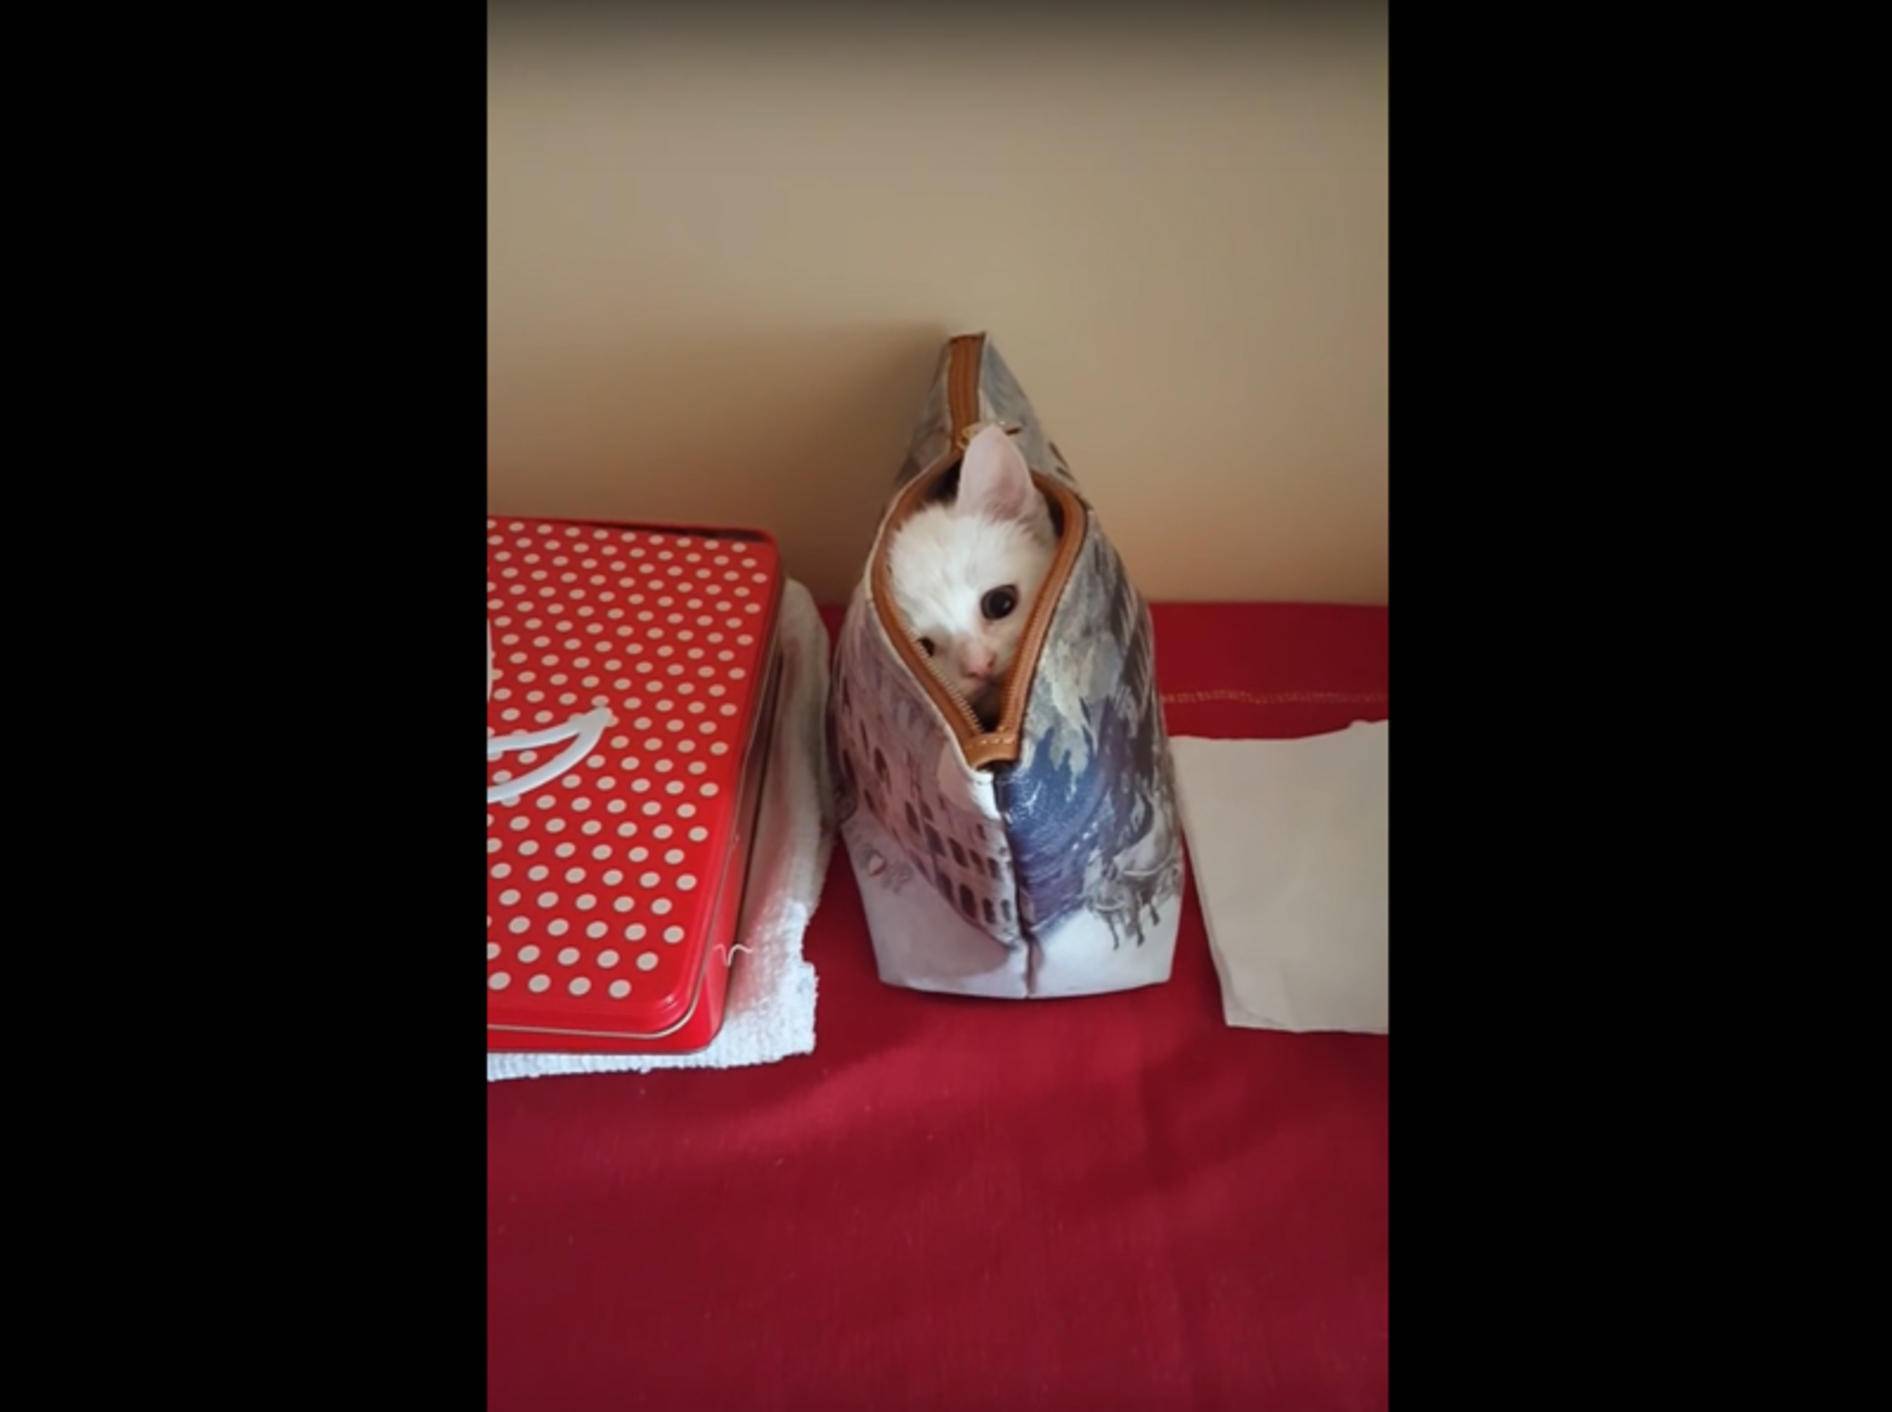 Süße Katze spielt Springteufel mit einer Handtasche – YouTube / Albina Cannavo